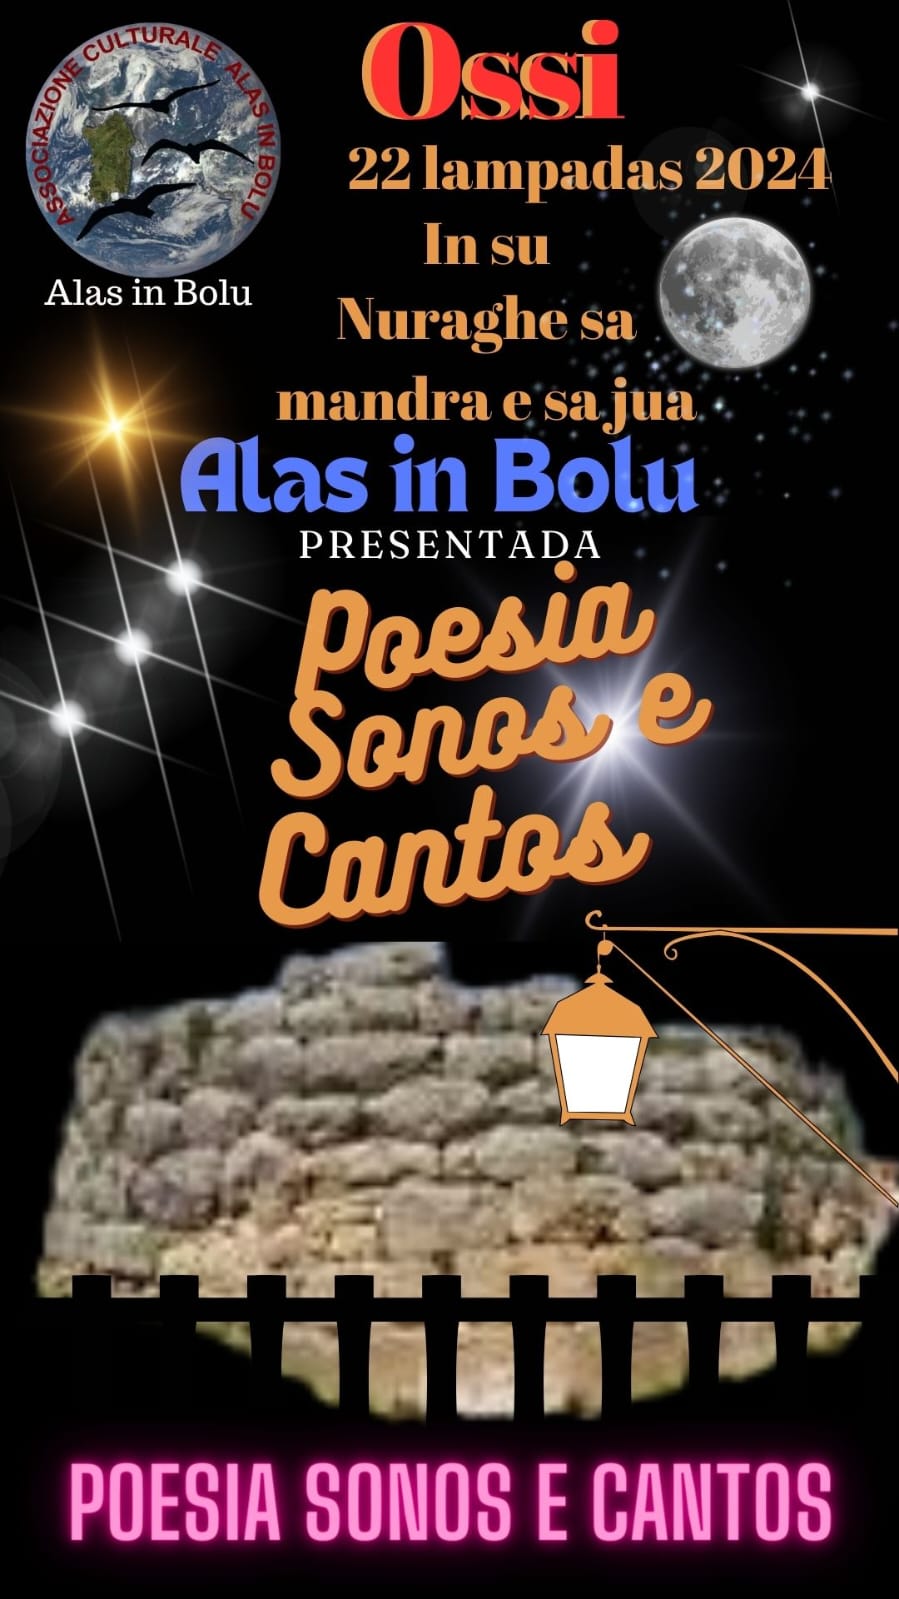 Alas in Bolu presenta Poesia Sonos e Cantos